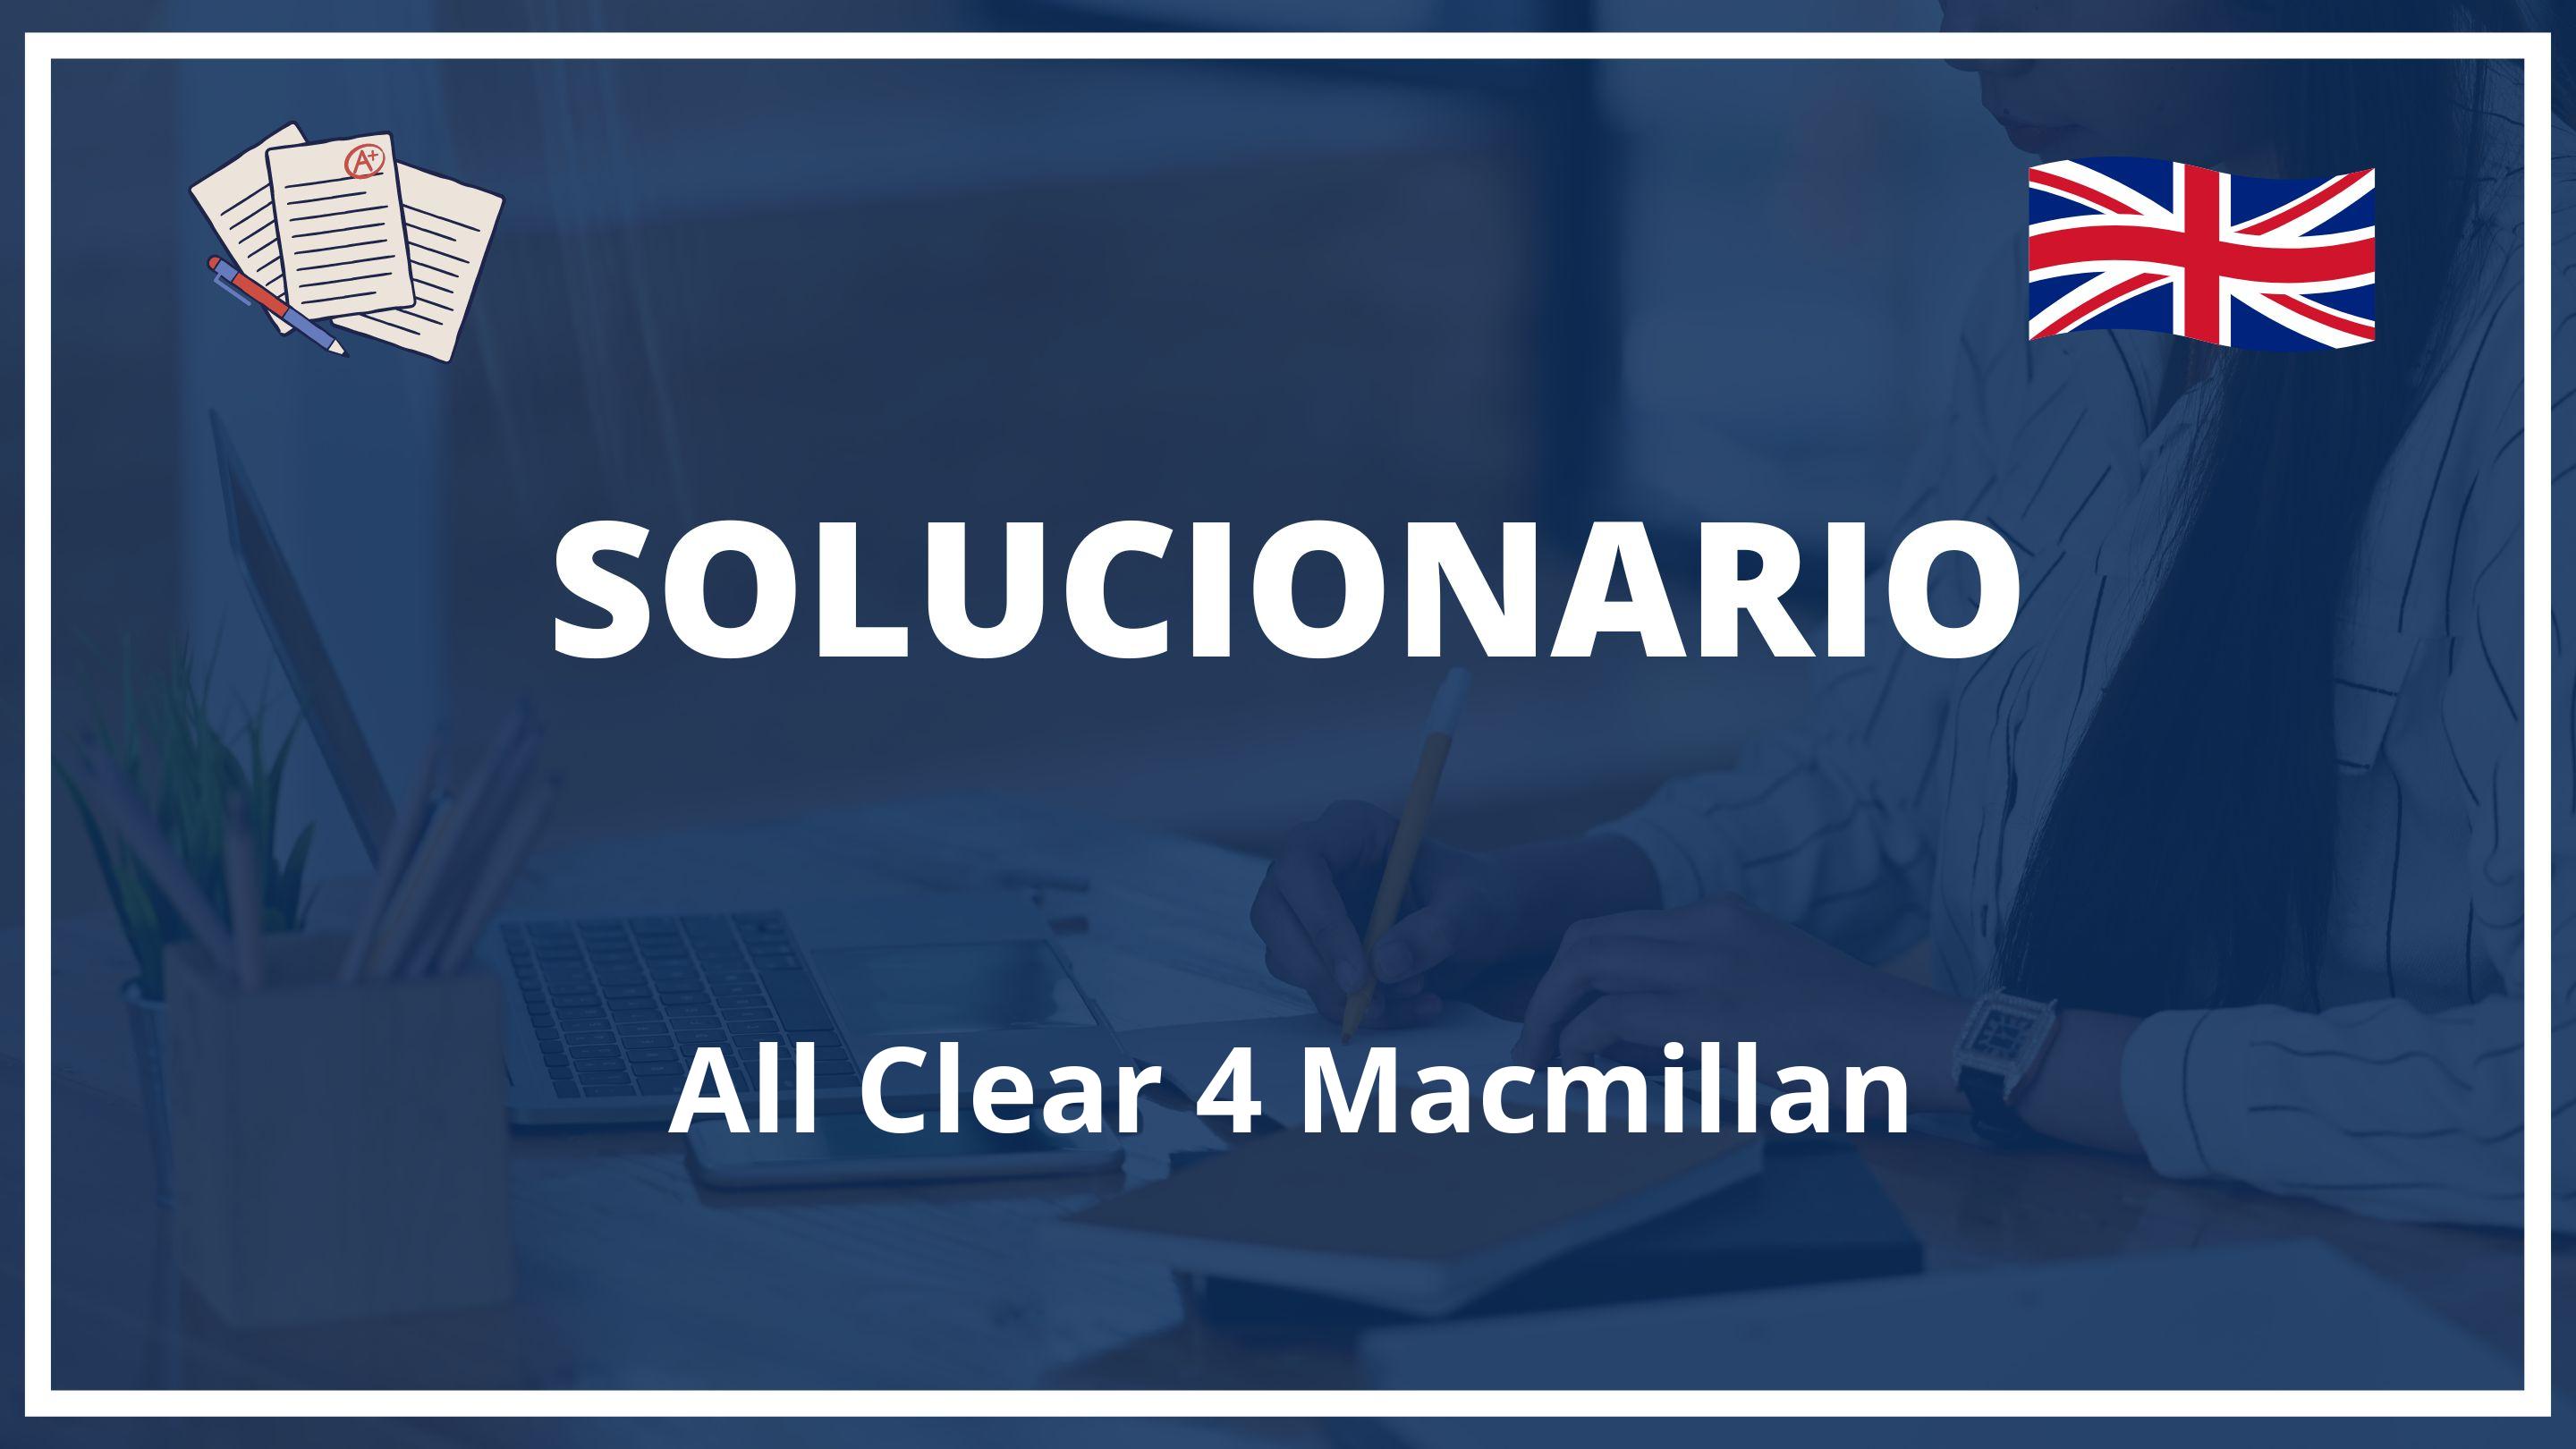 All Clear 4 Macmillan